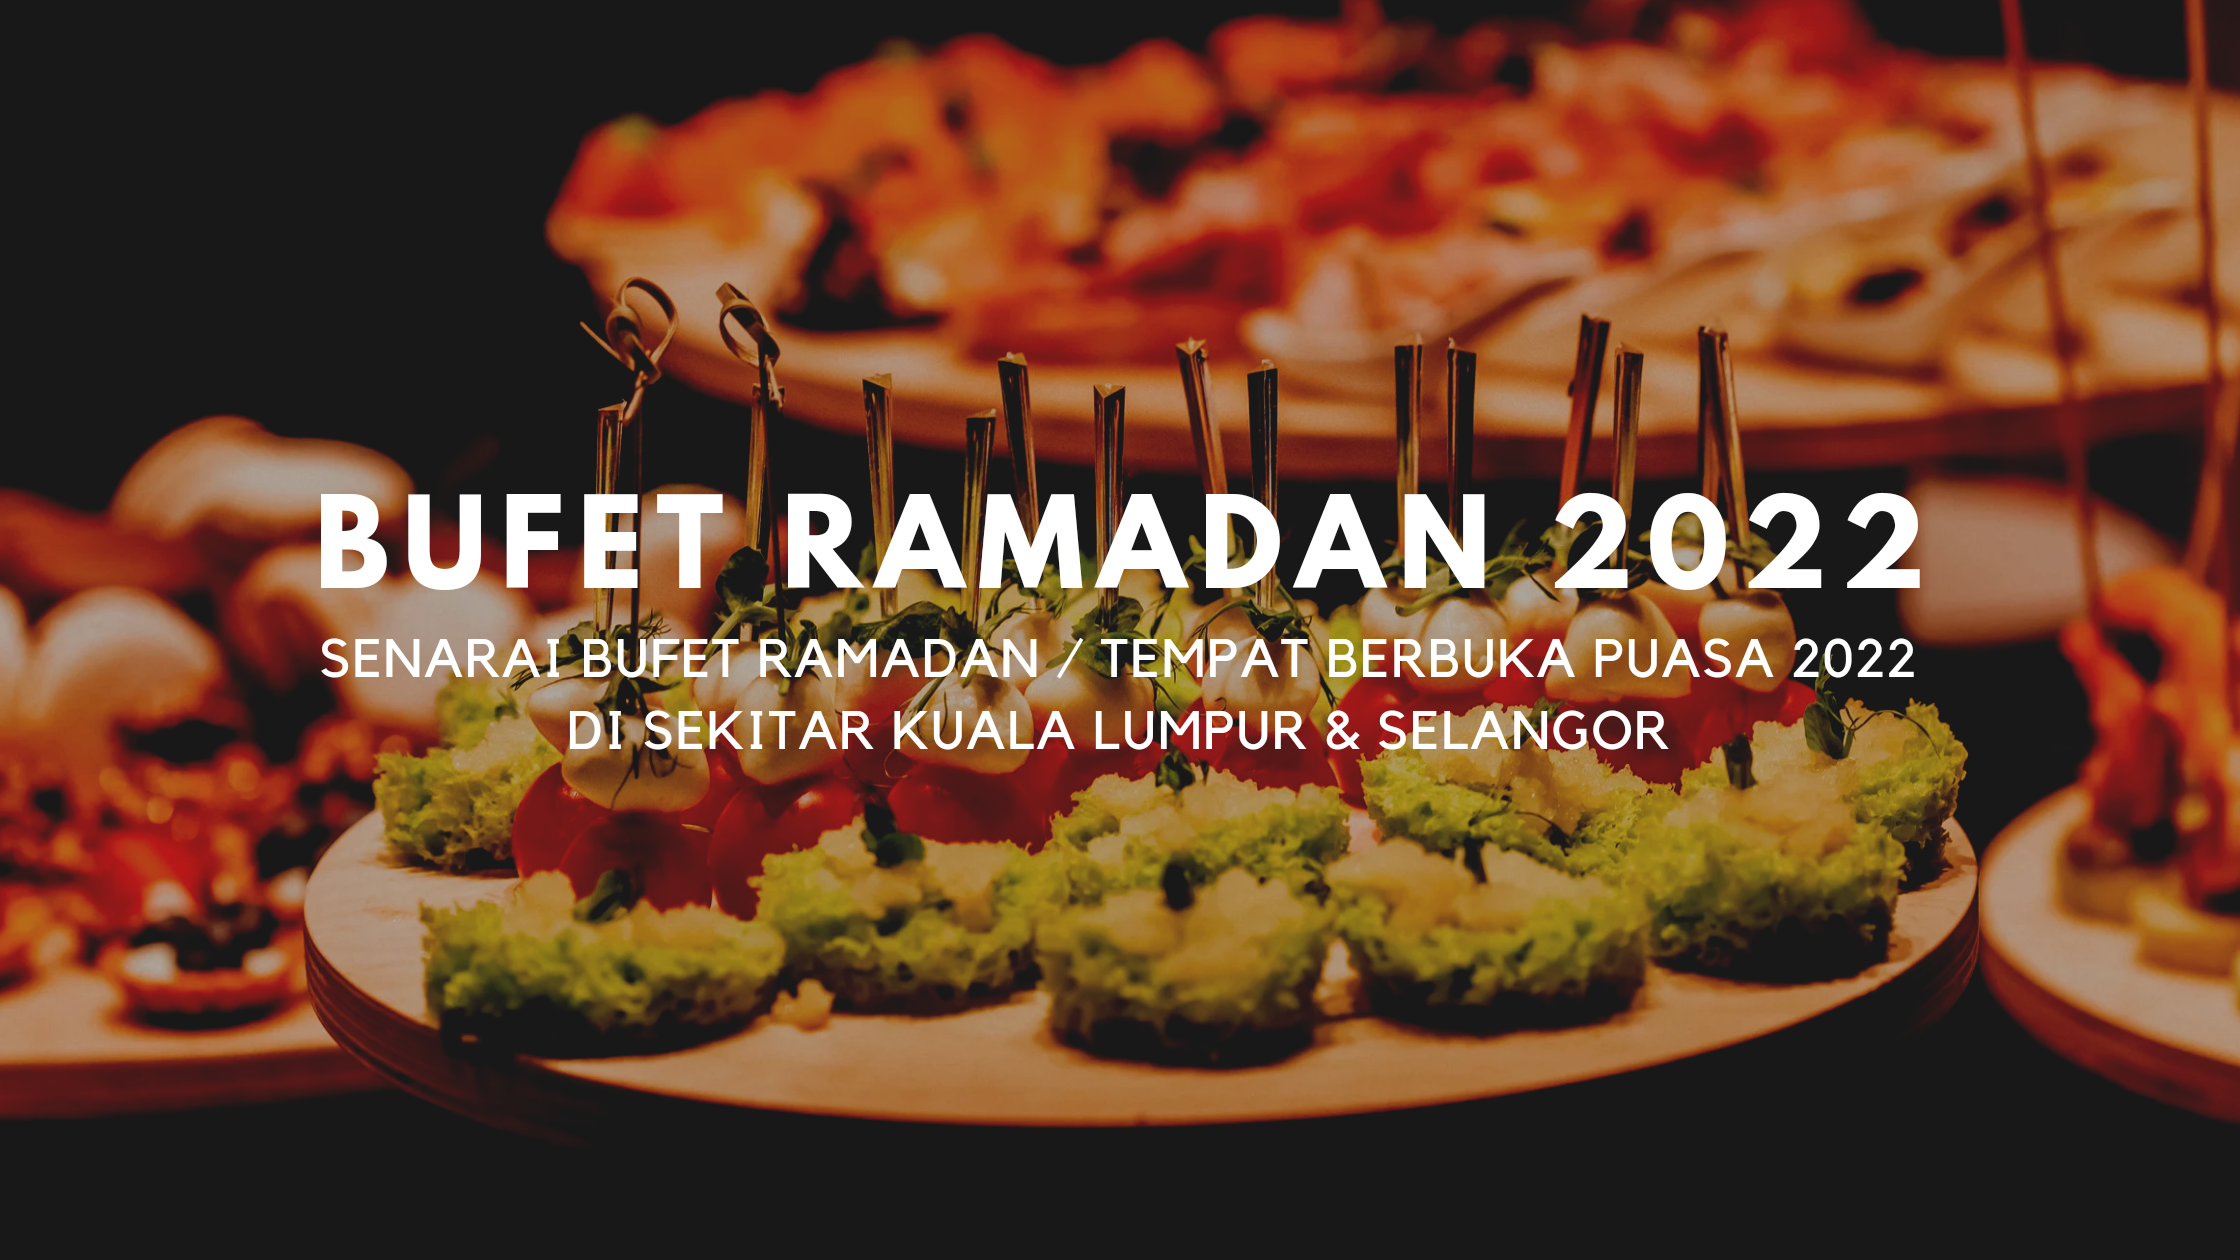 Buffet ramadhan 2022 murah